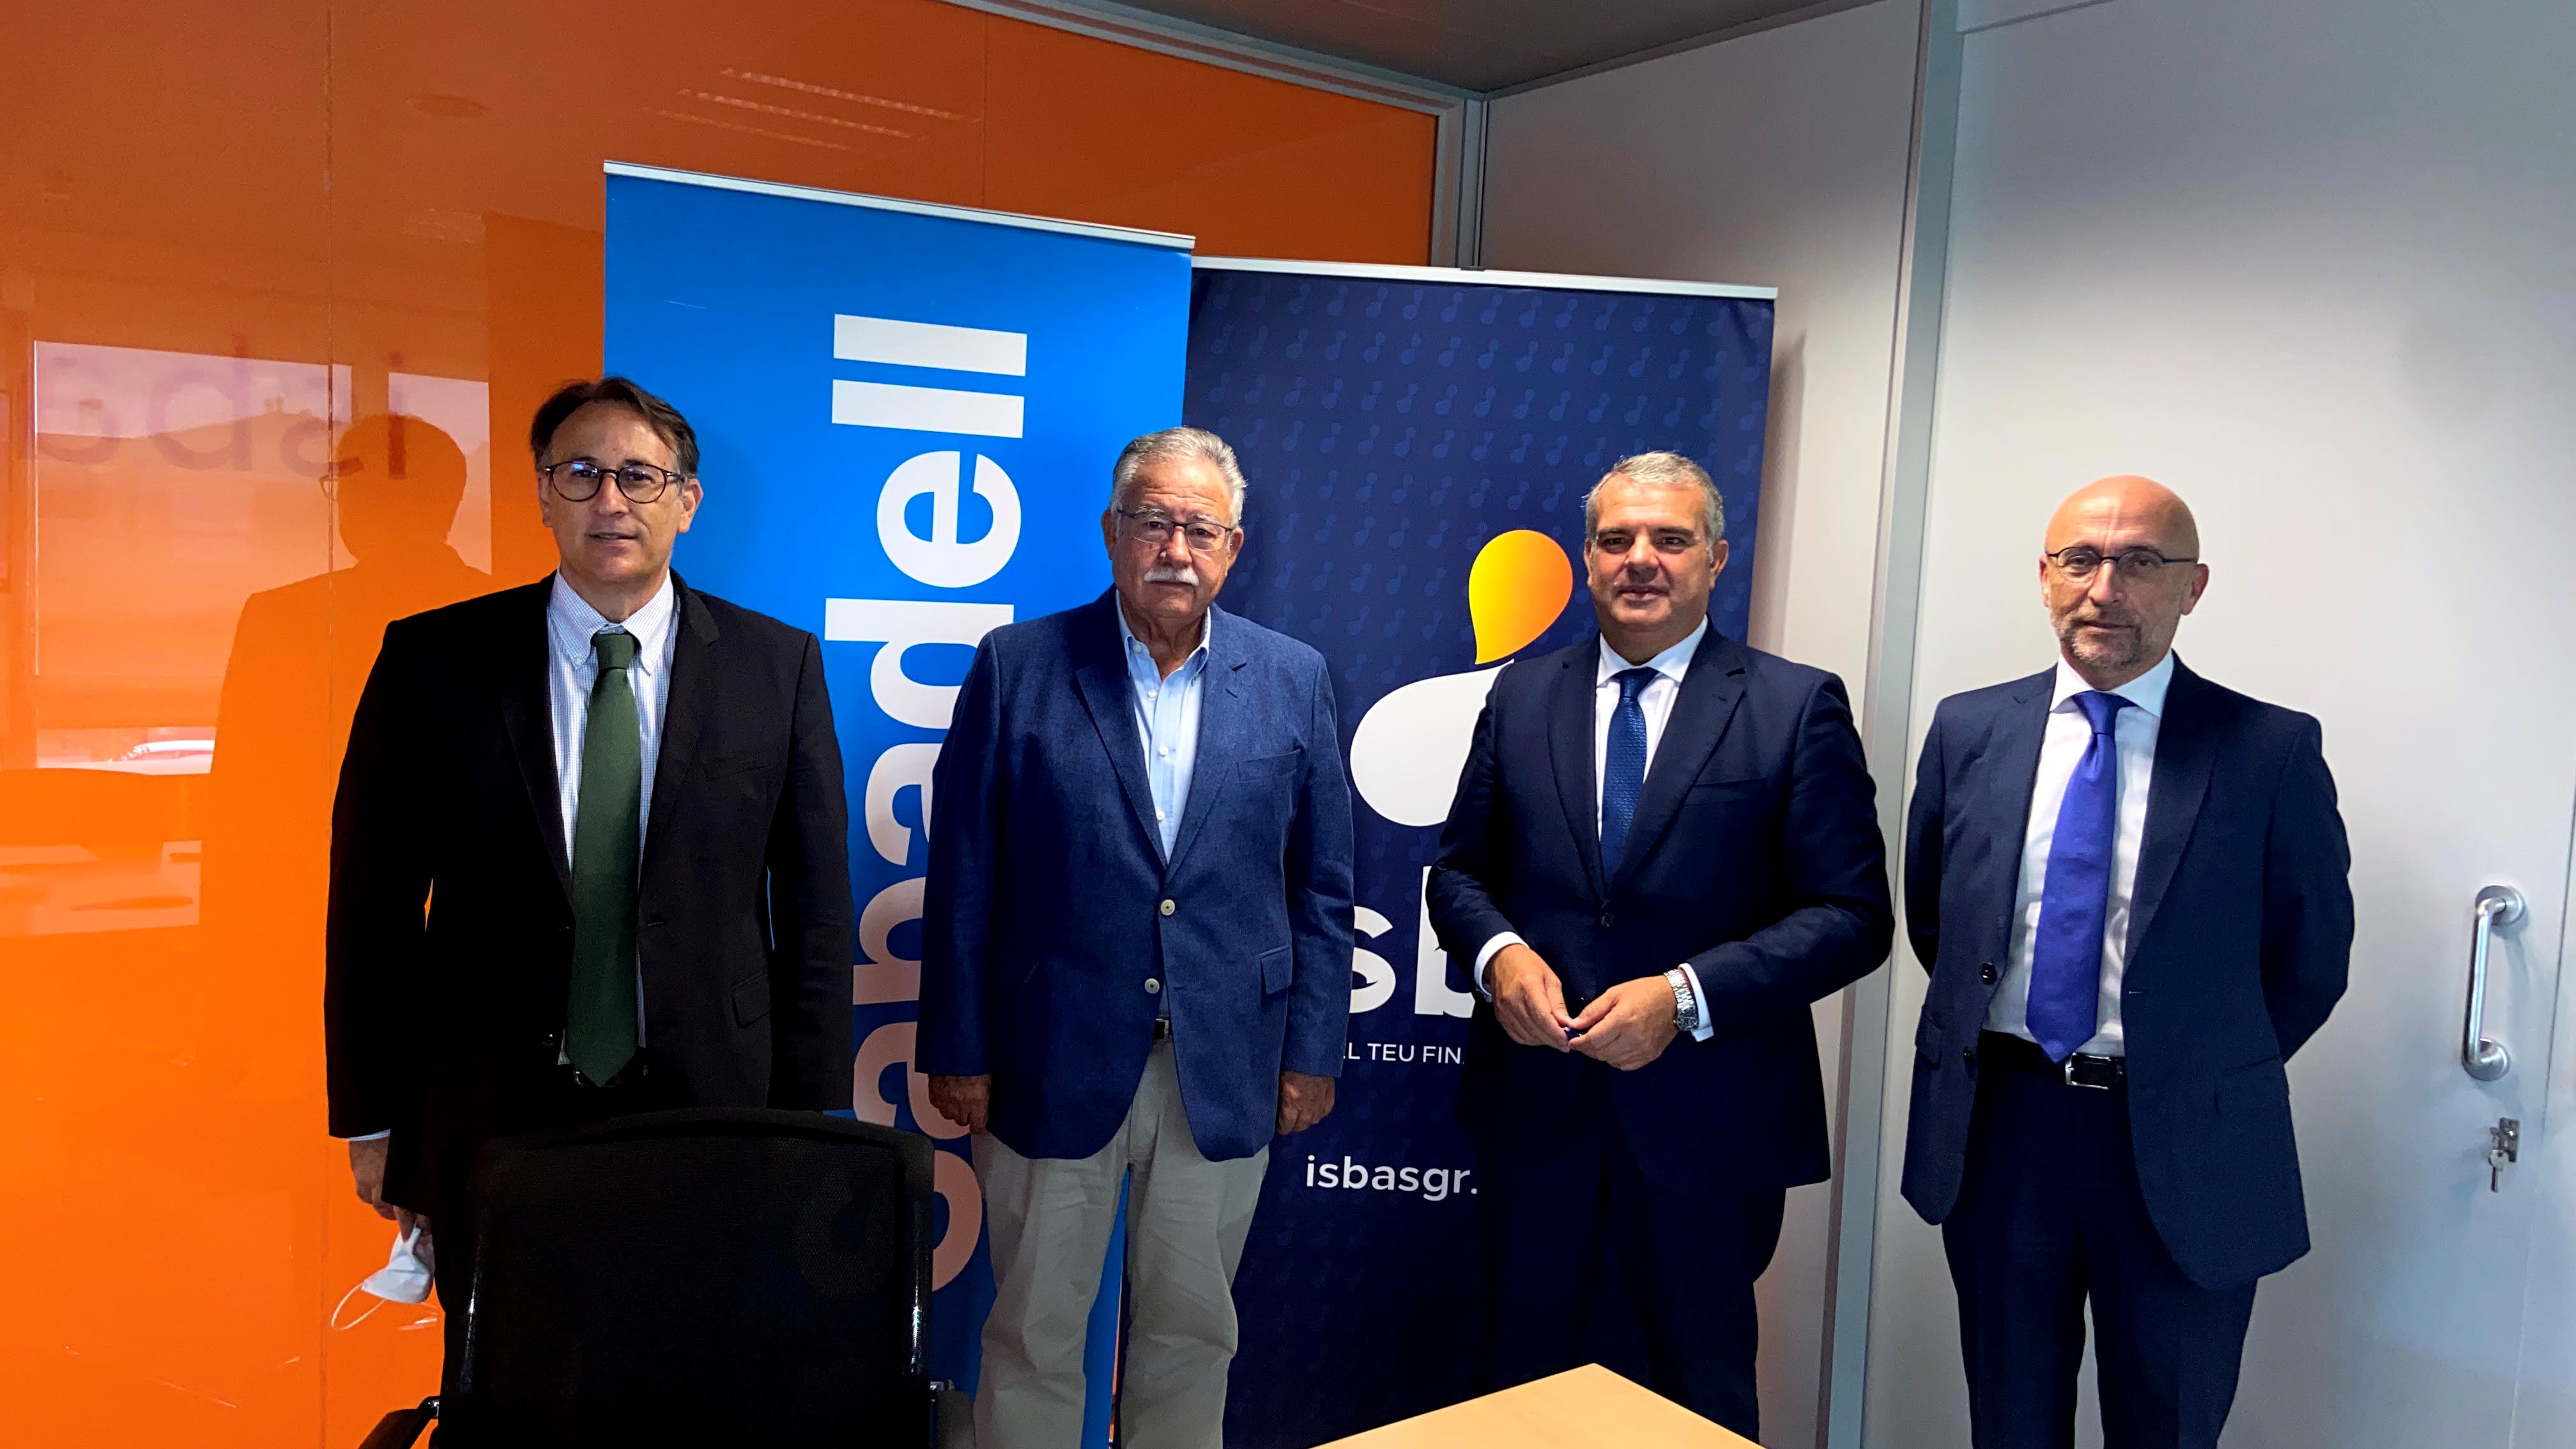 ISBA SGR y Banco Sabadell renuevan y amplían su convenio de colaboración